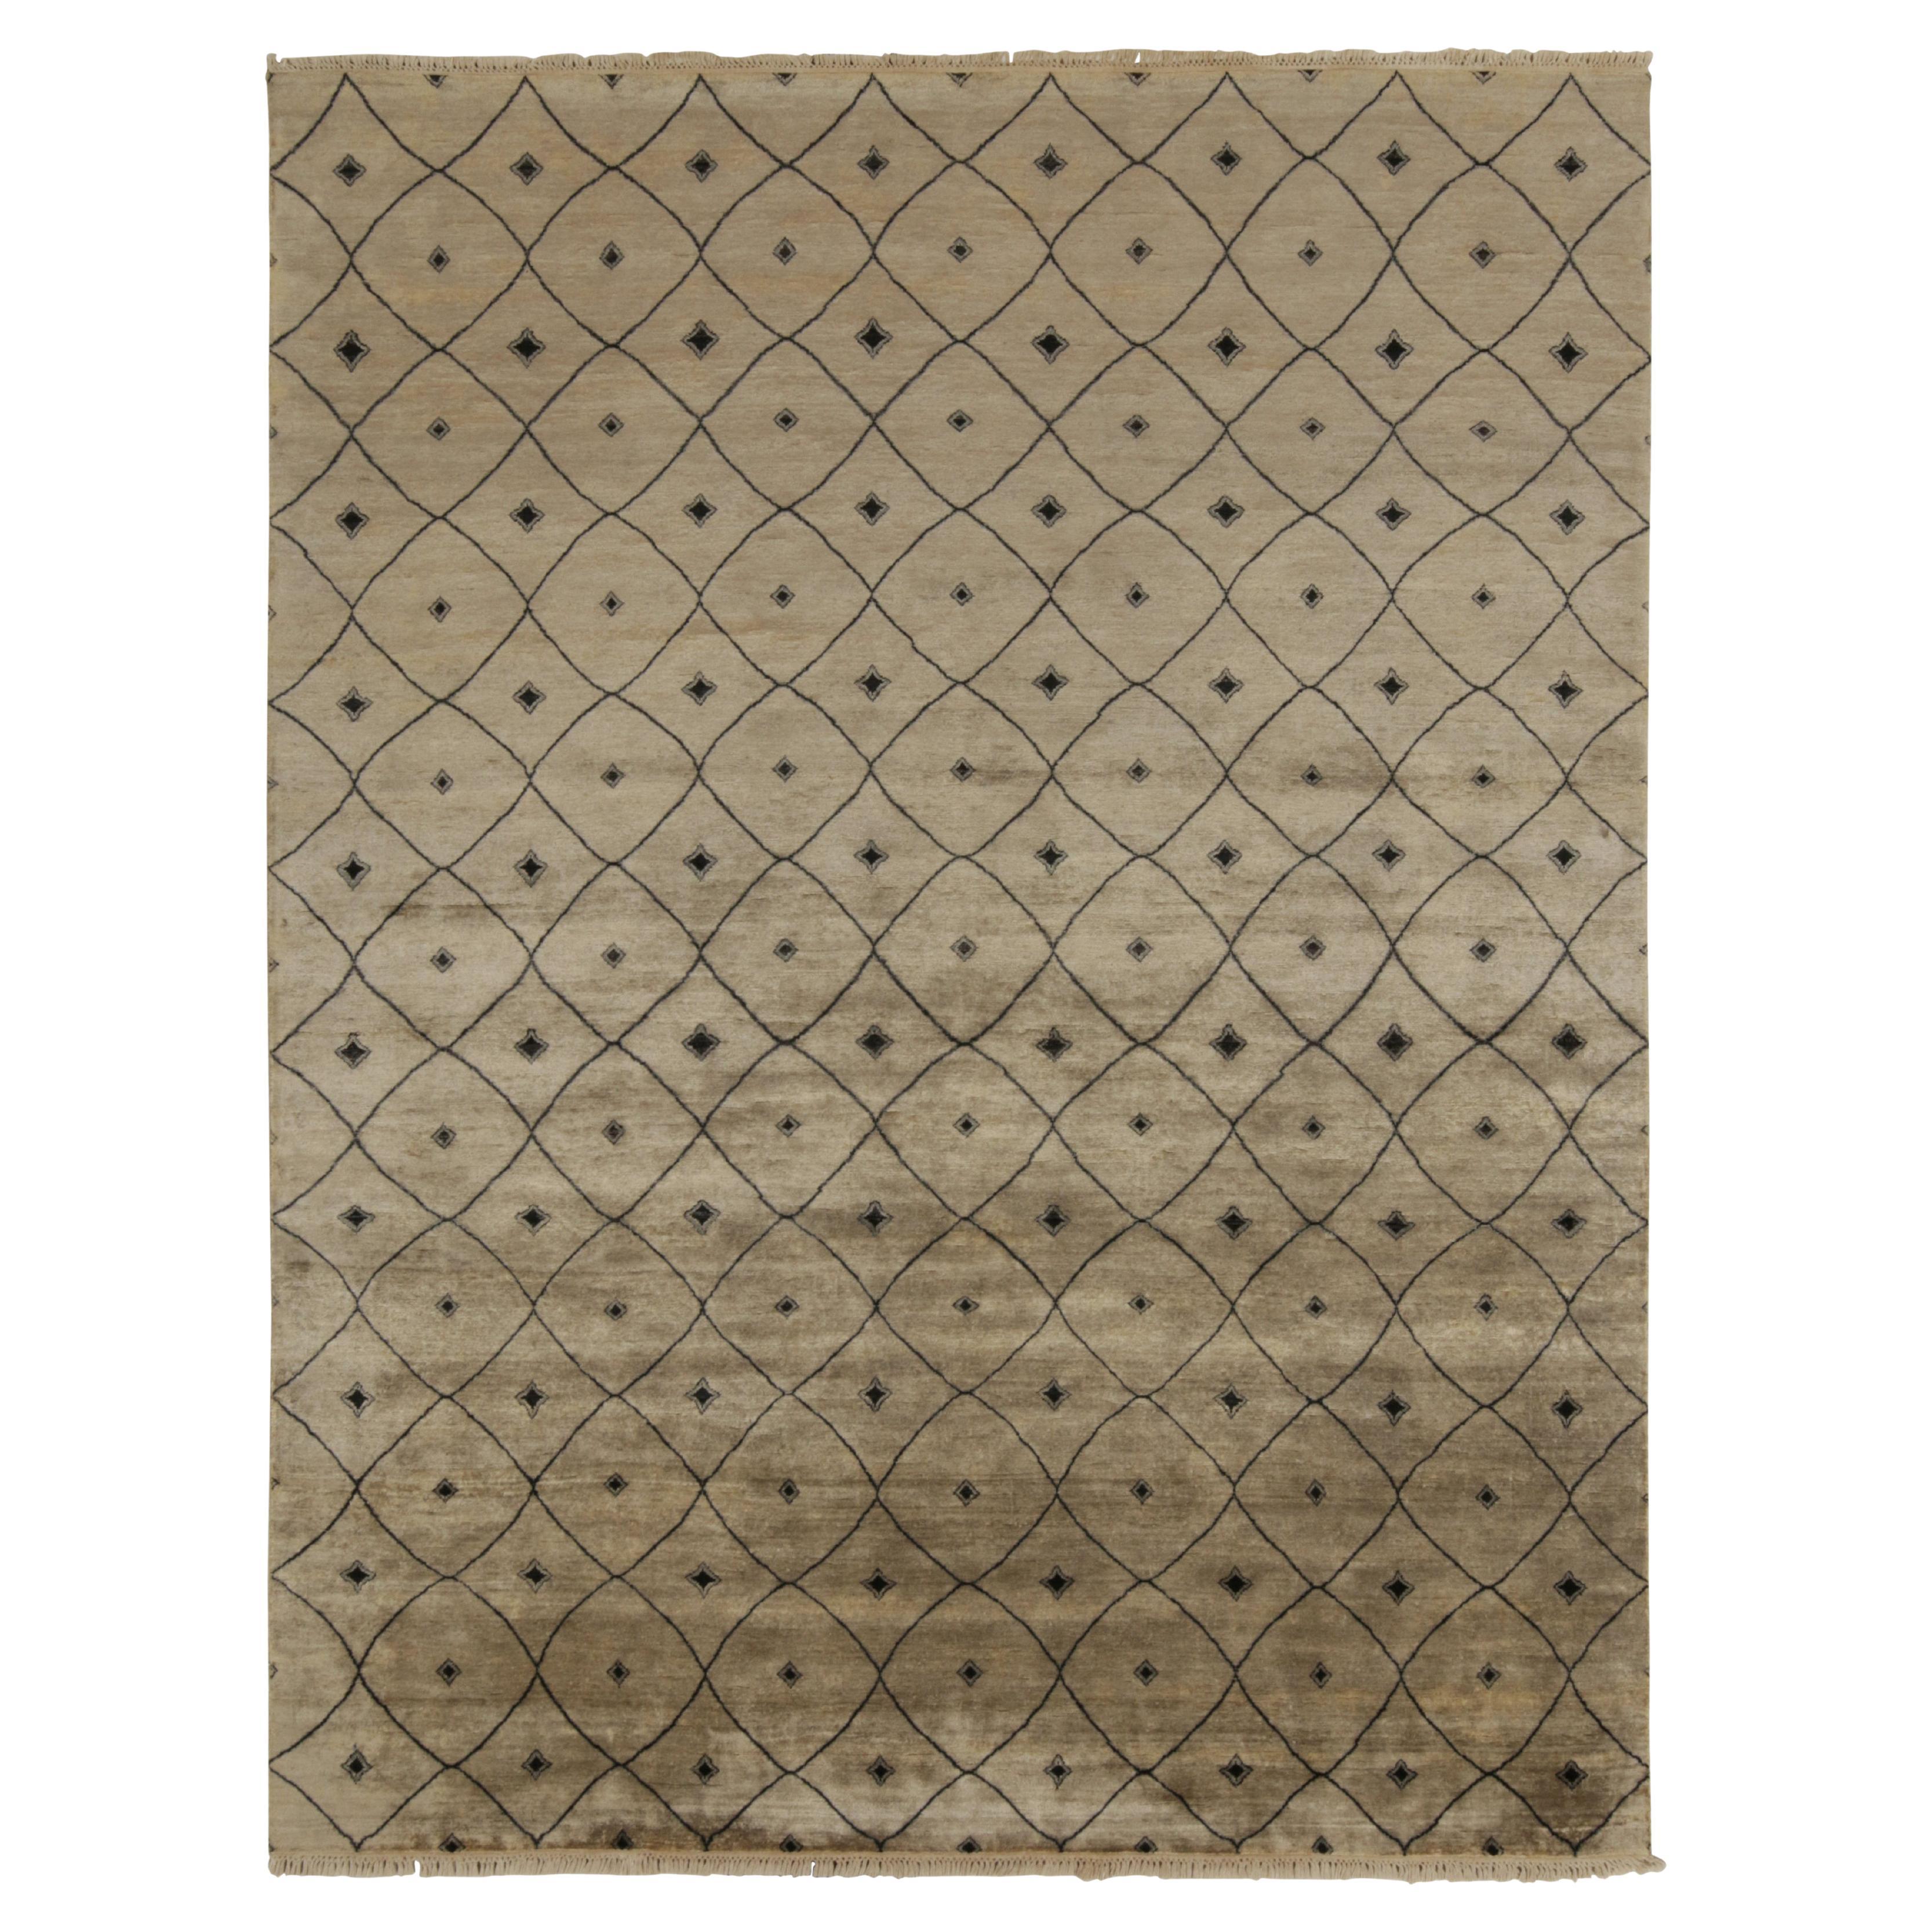 Tapis & Kilims - Tapis de style marocain en brun beige avec motif de treillis noir